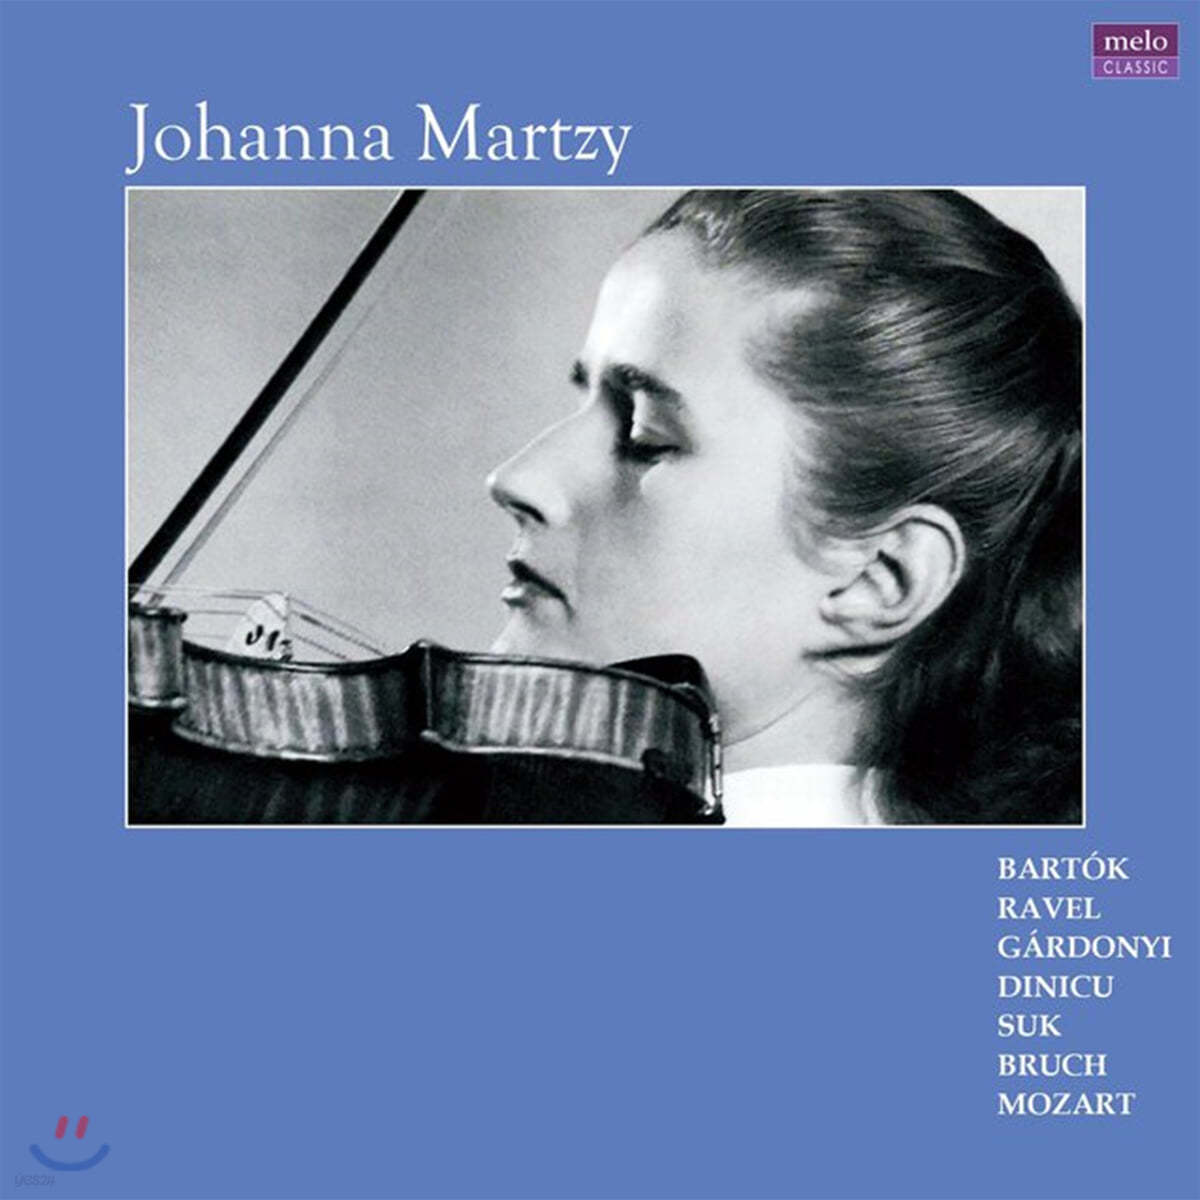 요한나 마르치 스위스 방송 녹음 (Johanna Martzy - Swiss Radio Broadcast Recordings 1947-1969) [2LP]